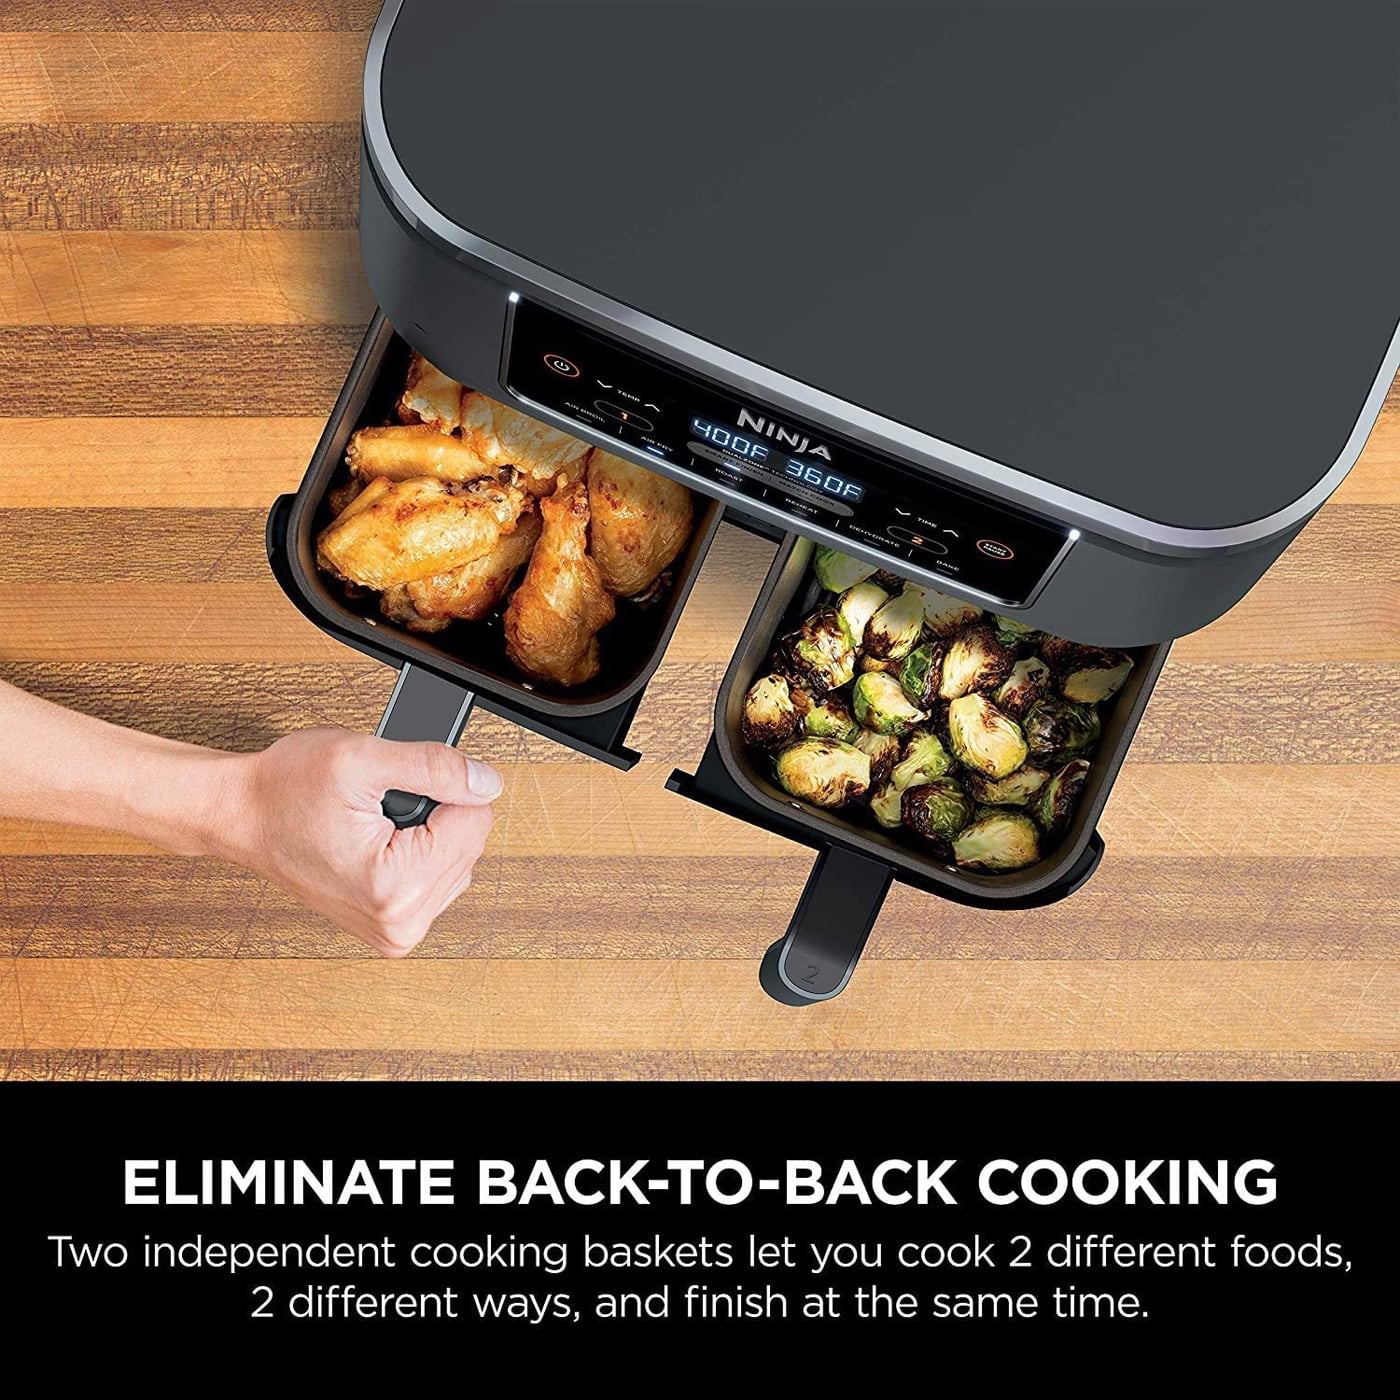 DZ100 Foodi 4 in 1 8 qt. 2 Basket Air Fryer with DualZone Technology Renewed Kitchen Dining